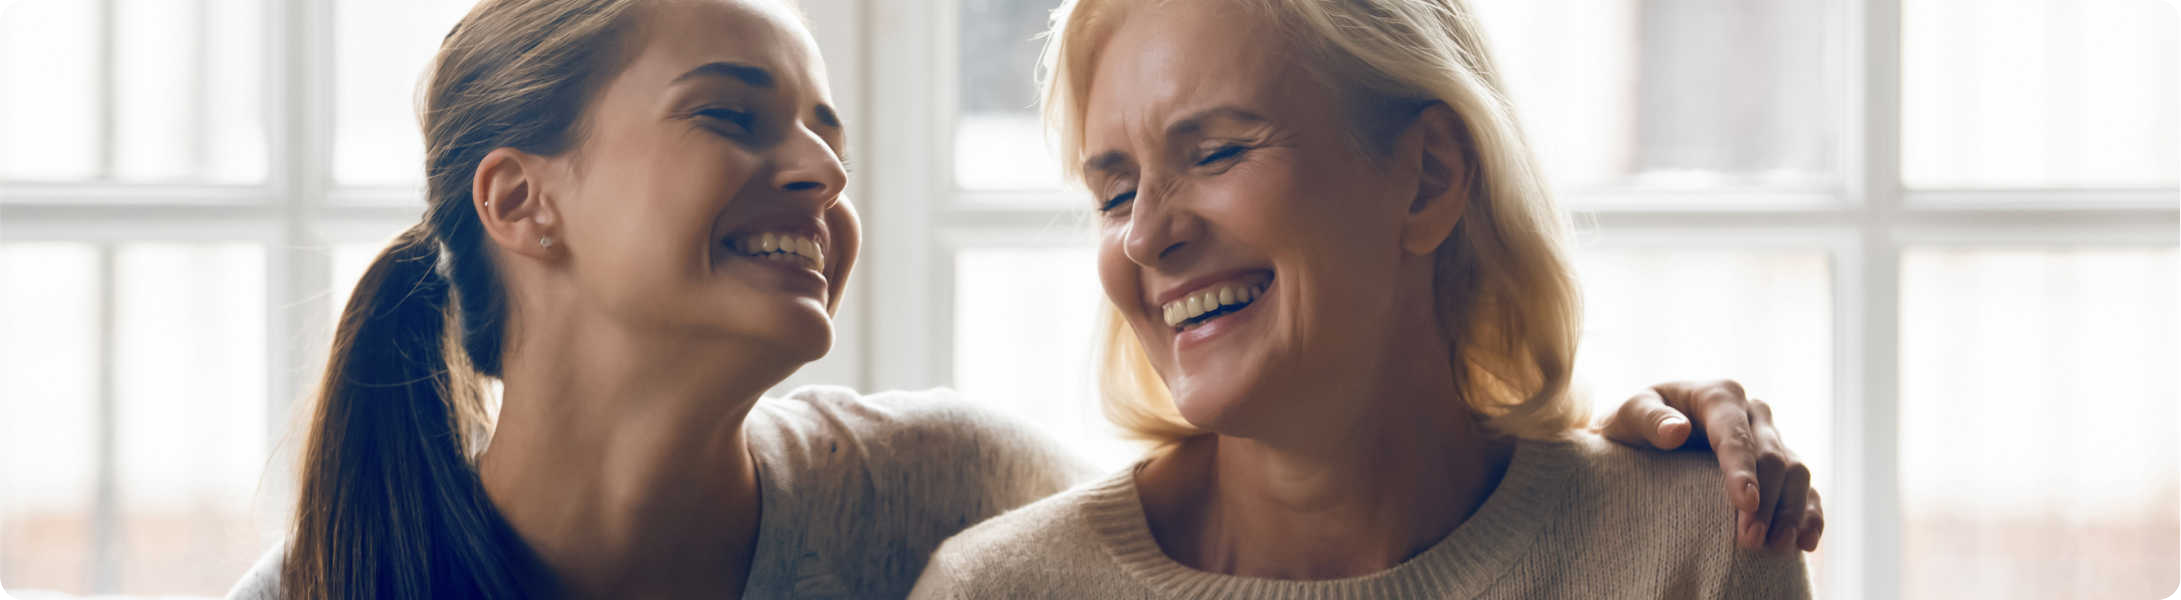 Twee vrouwen met gehoorapparaat in lachen samen